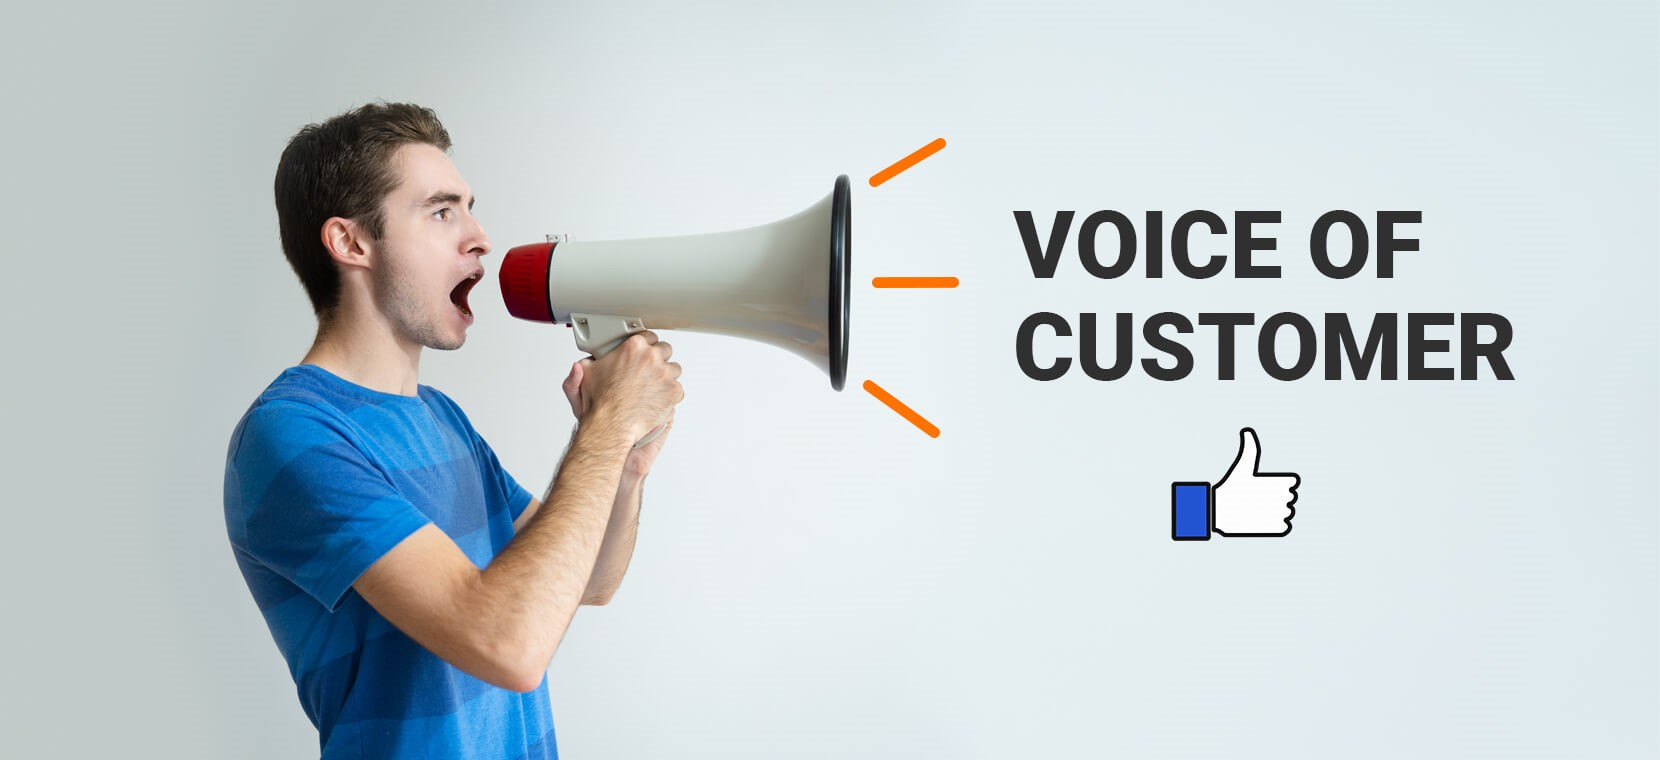 صدای مشتری چیست و چگونه می توان این صدا را شنید و از آن استفاده کرد؟